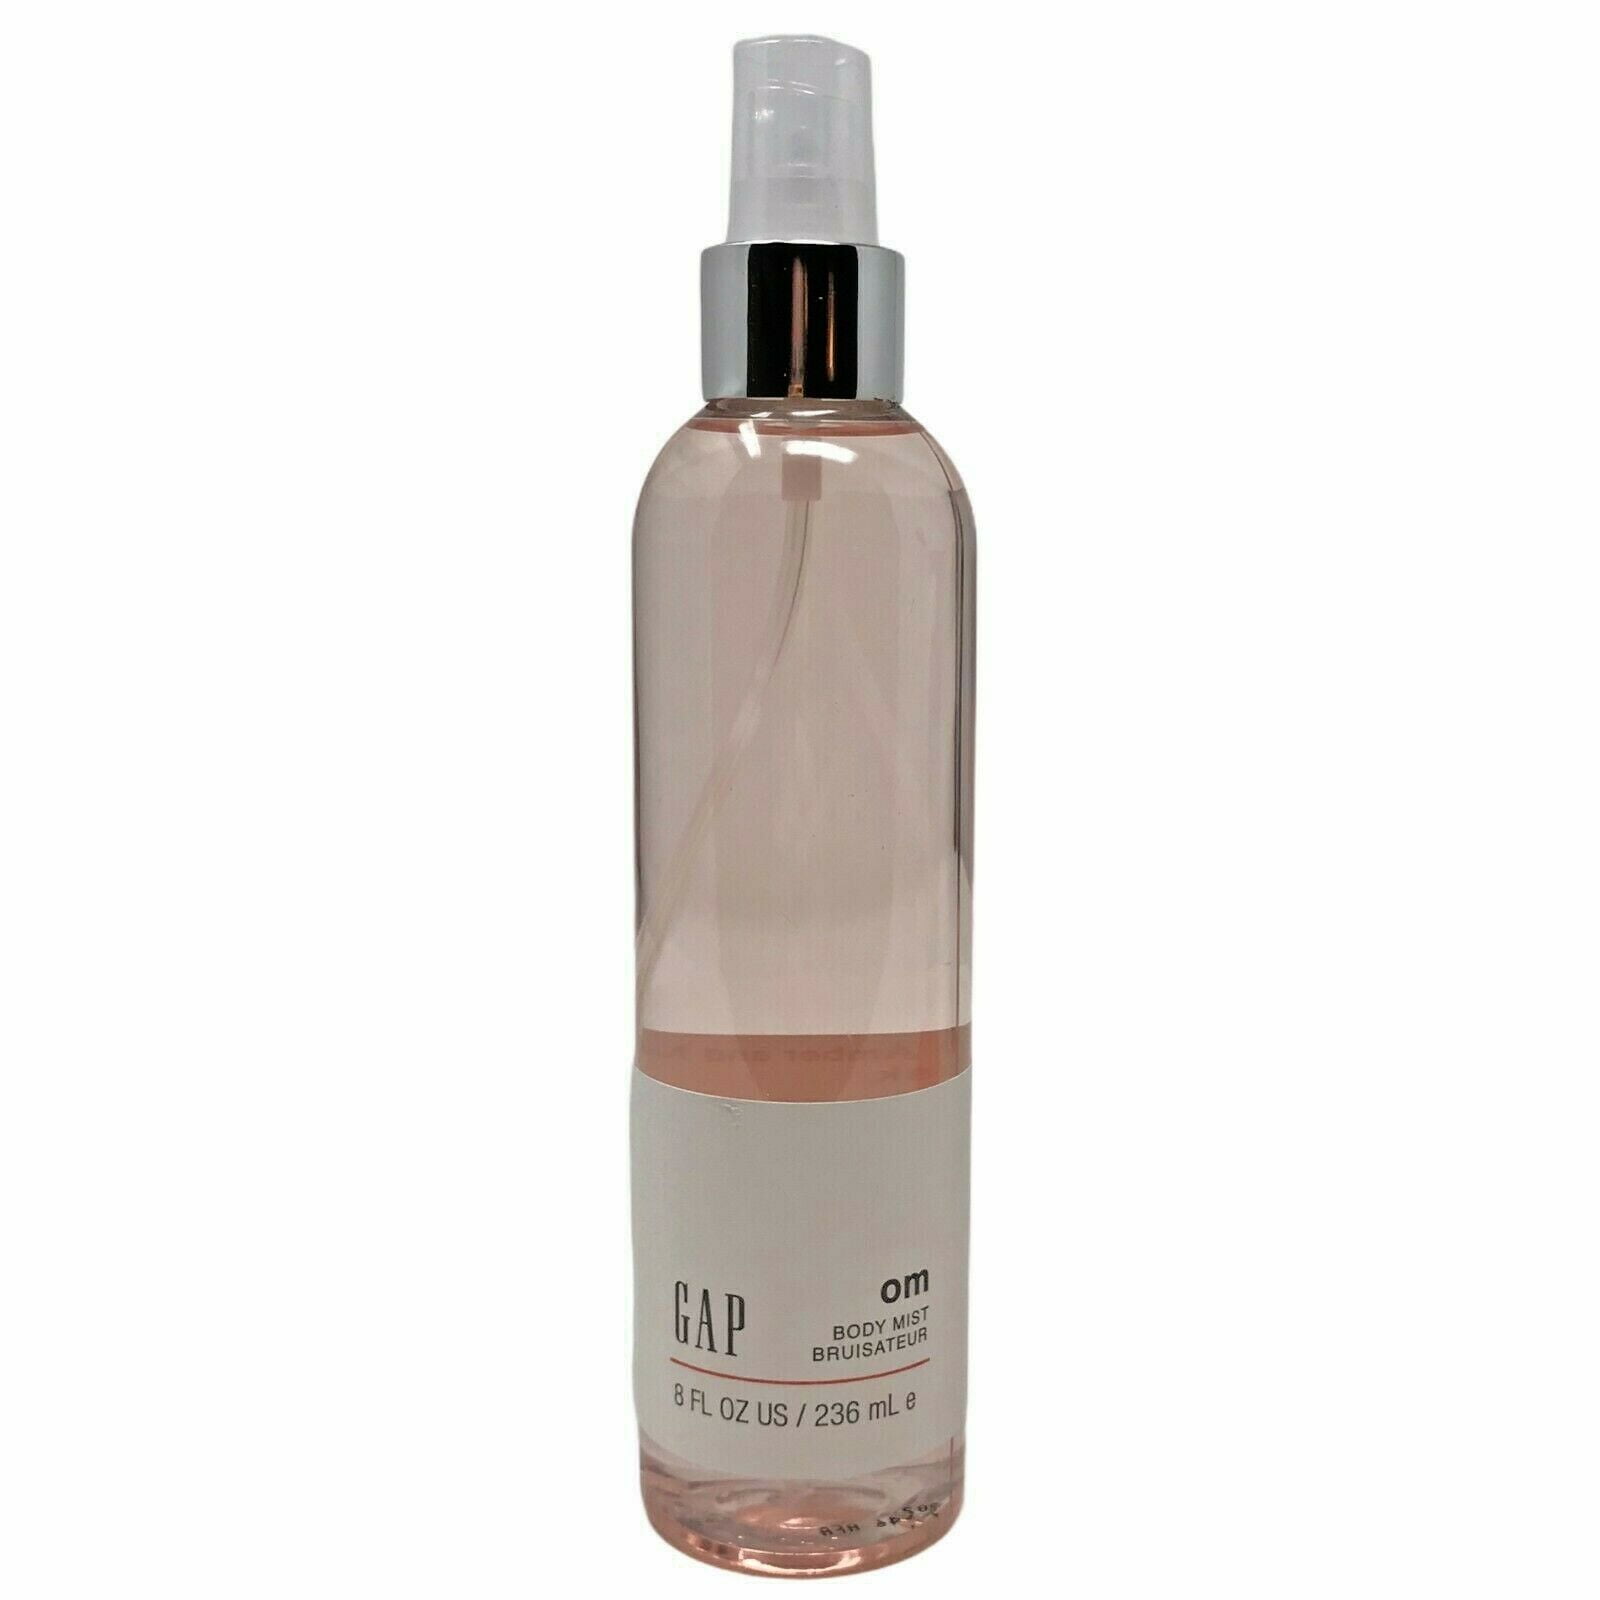 Mirar furtivamente Colector Lujoso Gap OM Fragrance Spray Body Mist 8 FL Oz - Walmart.com